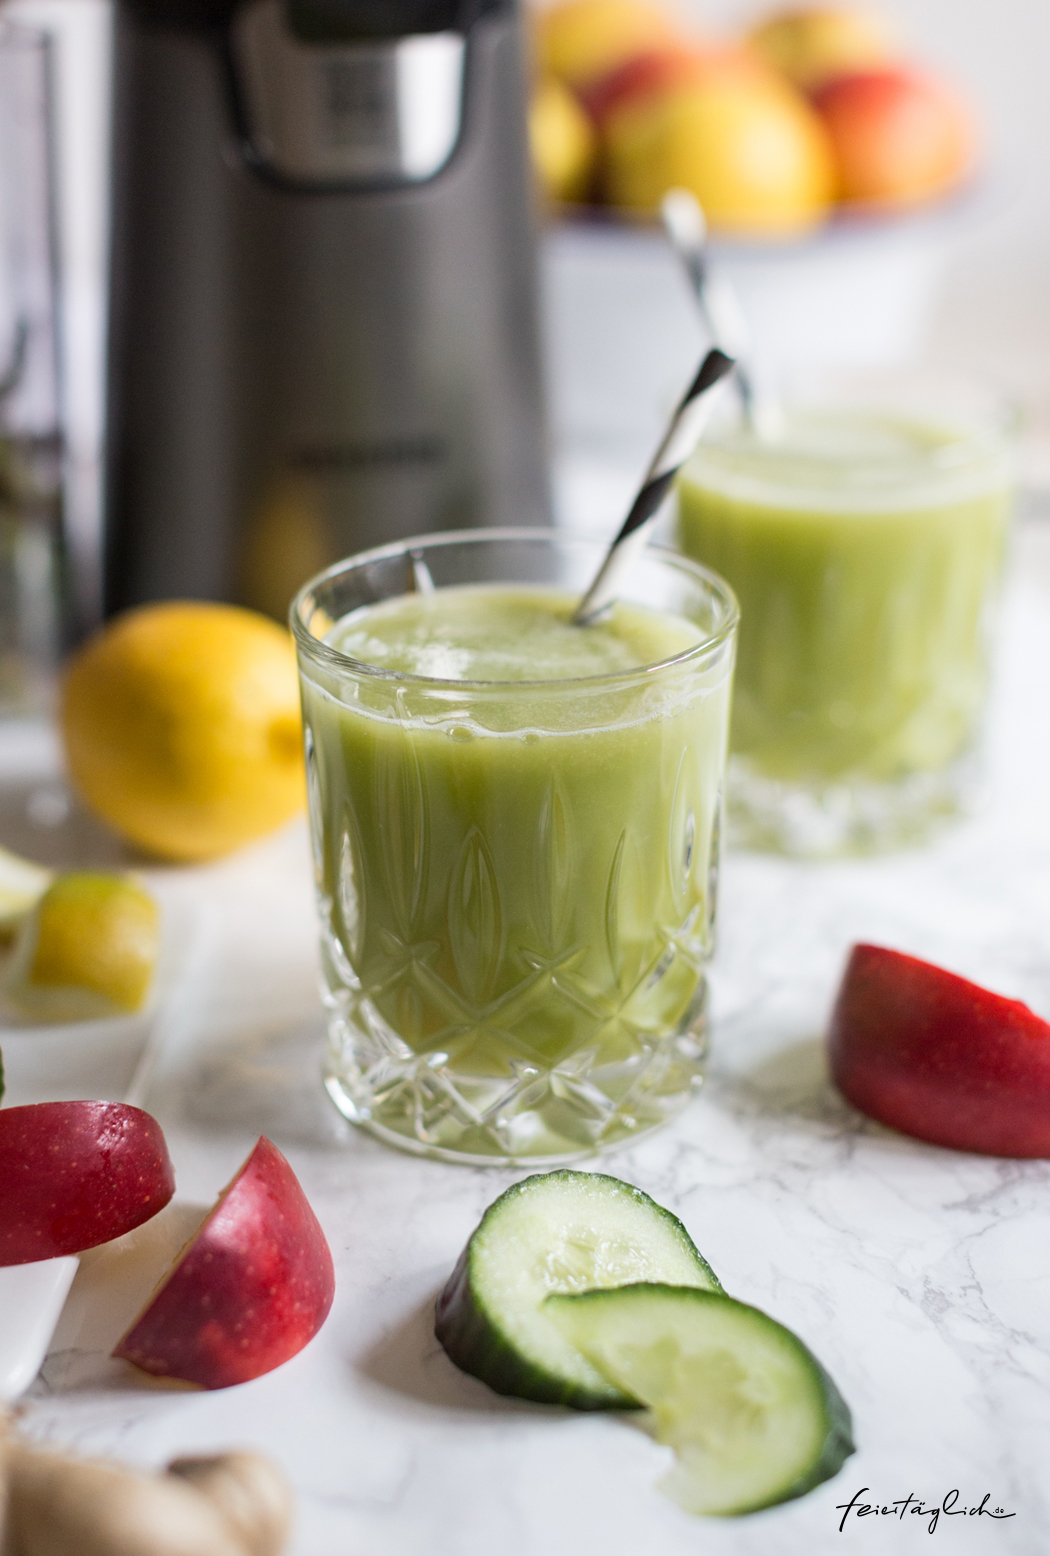 KickStart ins neue Jahr mit frischem Gurke-Apfel-Ingwer-Zitrone Saft, grüner Ingwer-Shot als Boost fürs Immunsystem